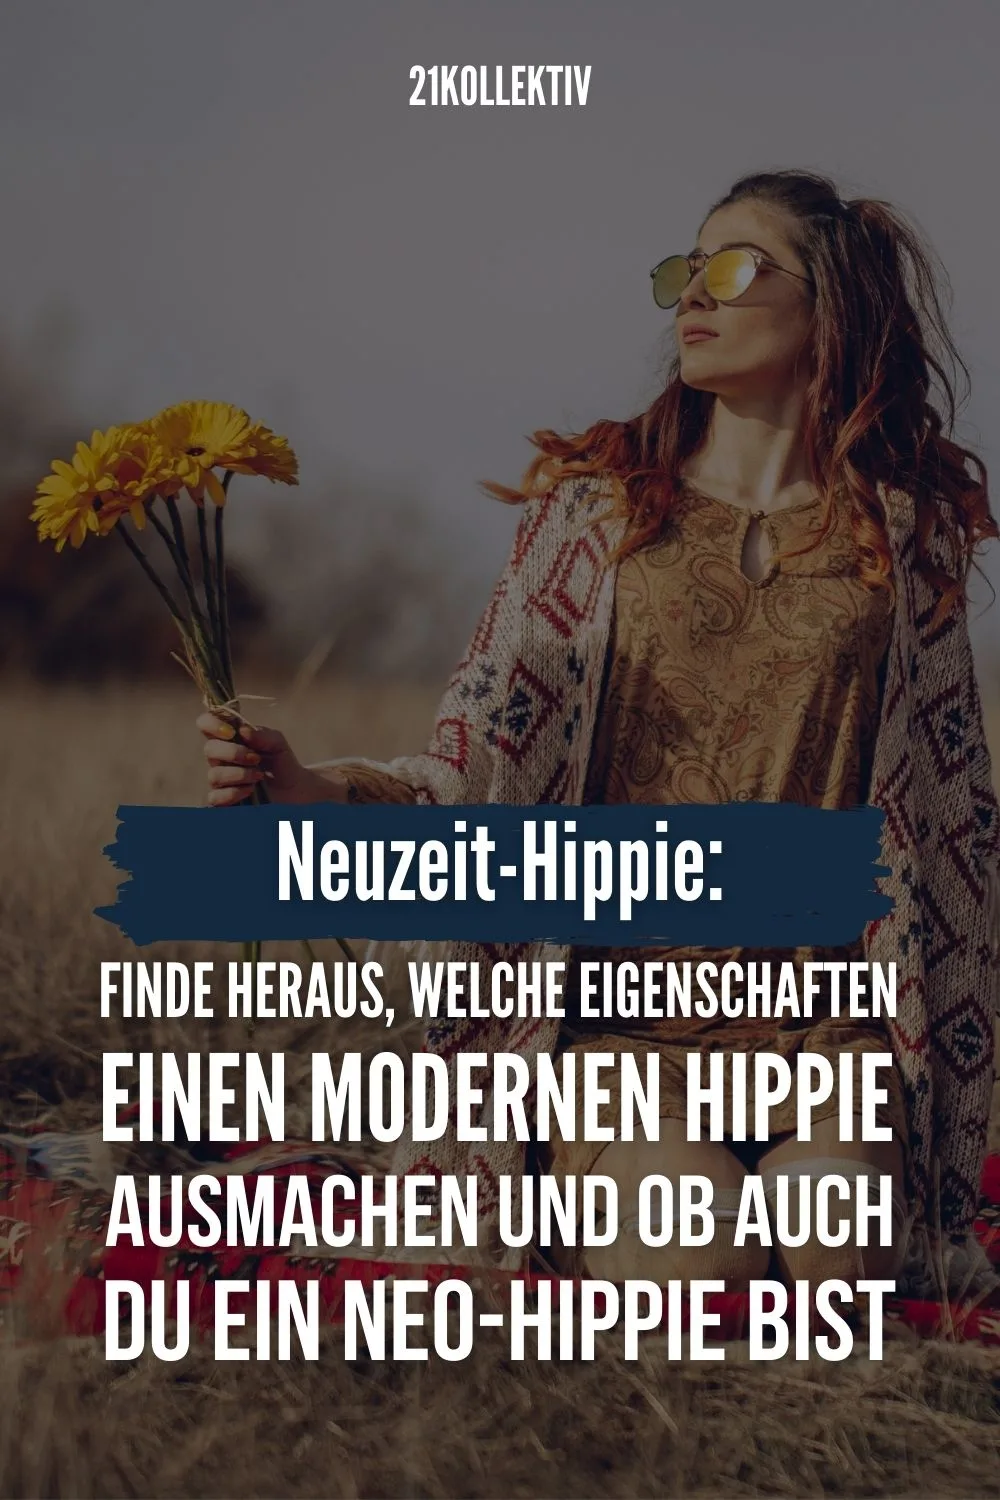 Neuzeit-Hippie: Finde heraus, welche Eigenschaften einen modernen Hippie ausmachen und ob auch du ein Neo-Hippie bist